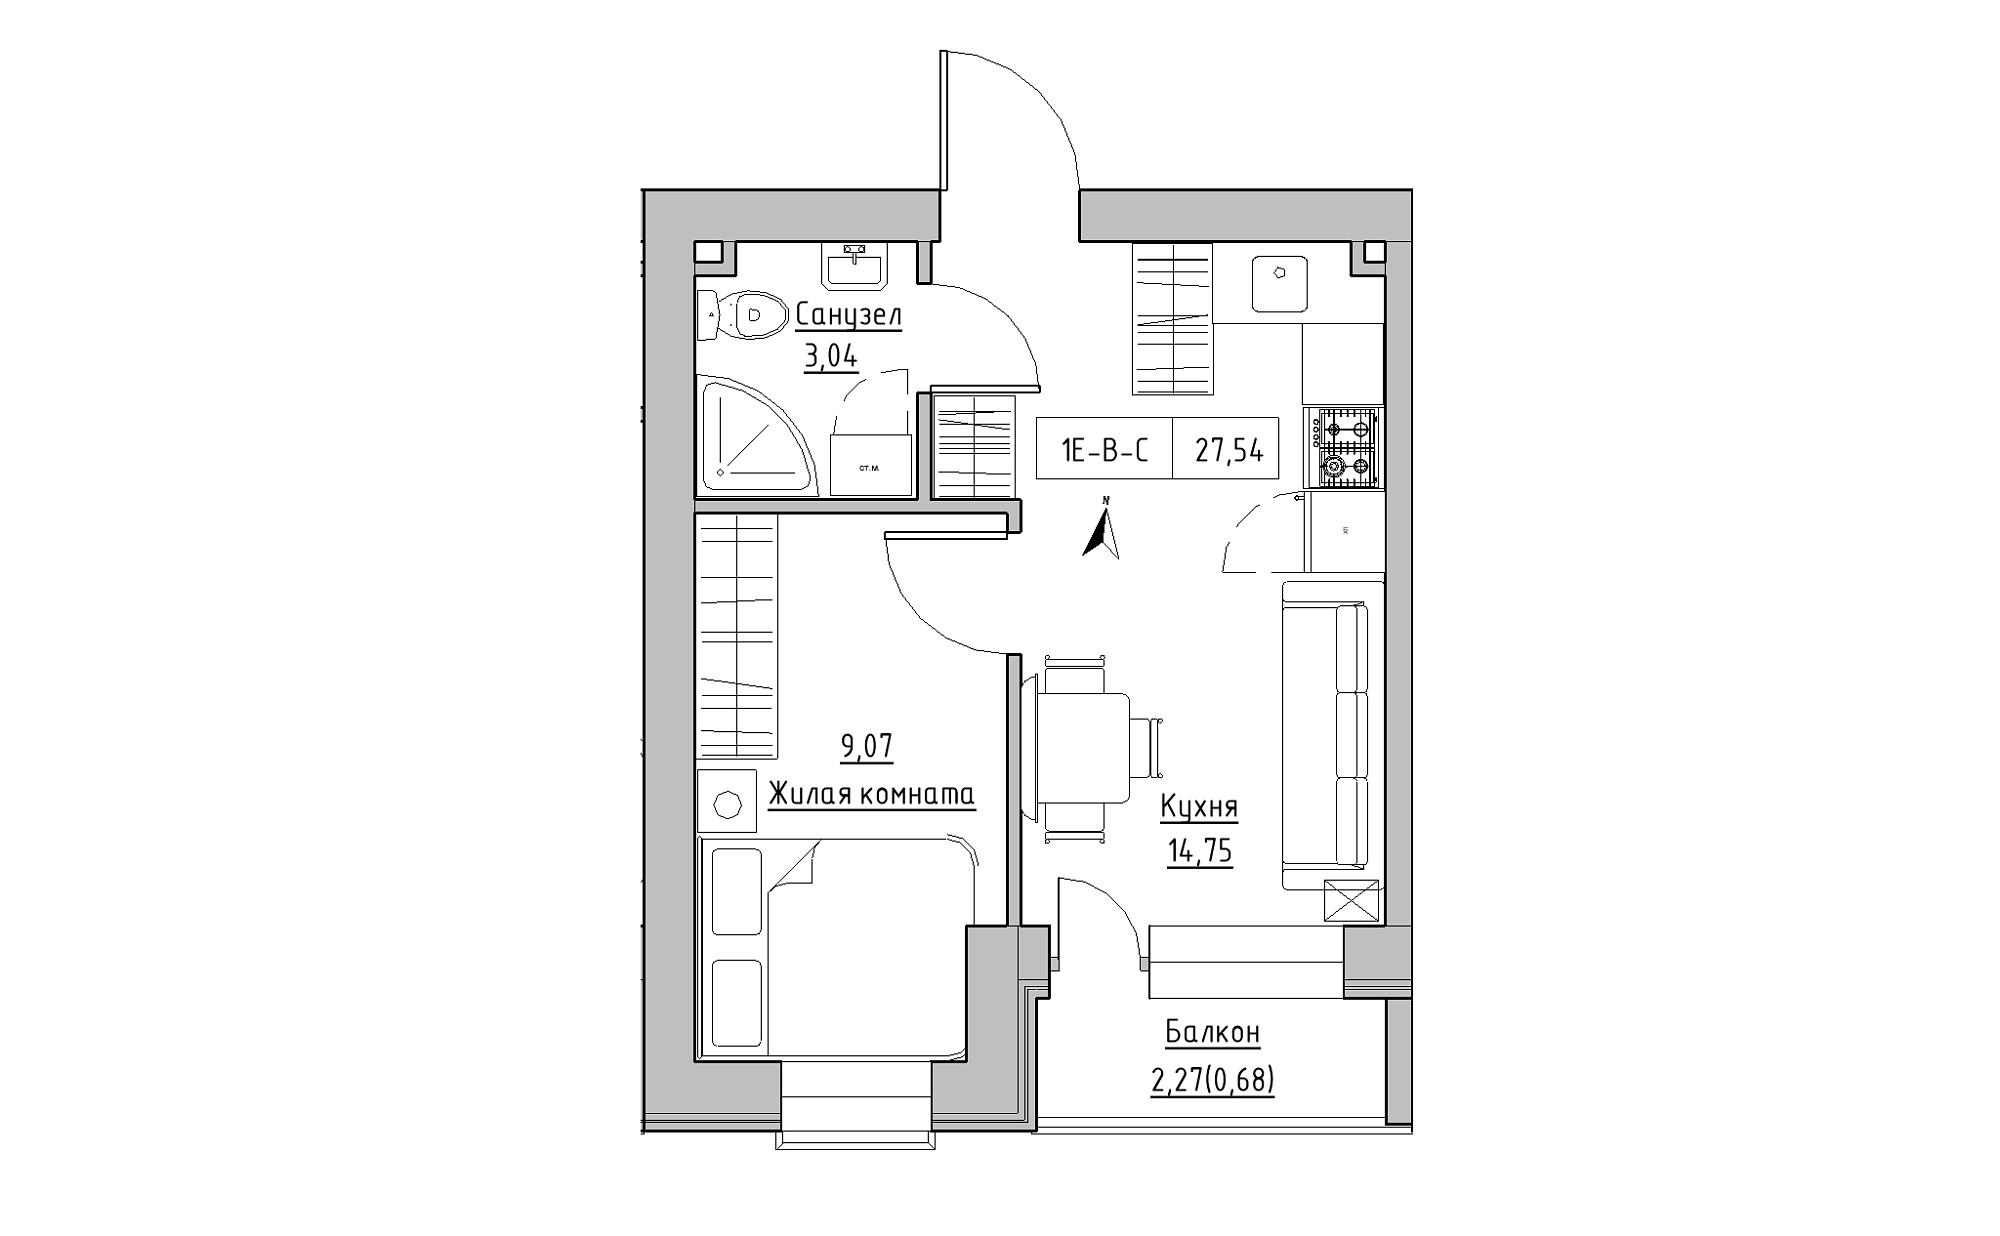 Планировка 1-к квартира площей 27.54м2, KS-023-05/0012.